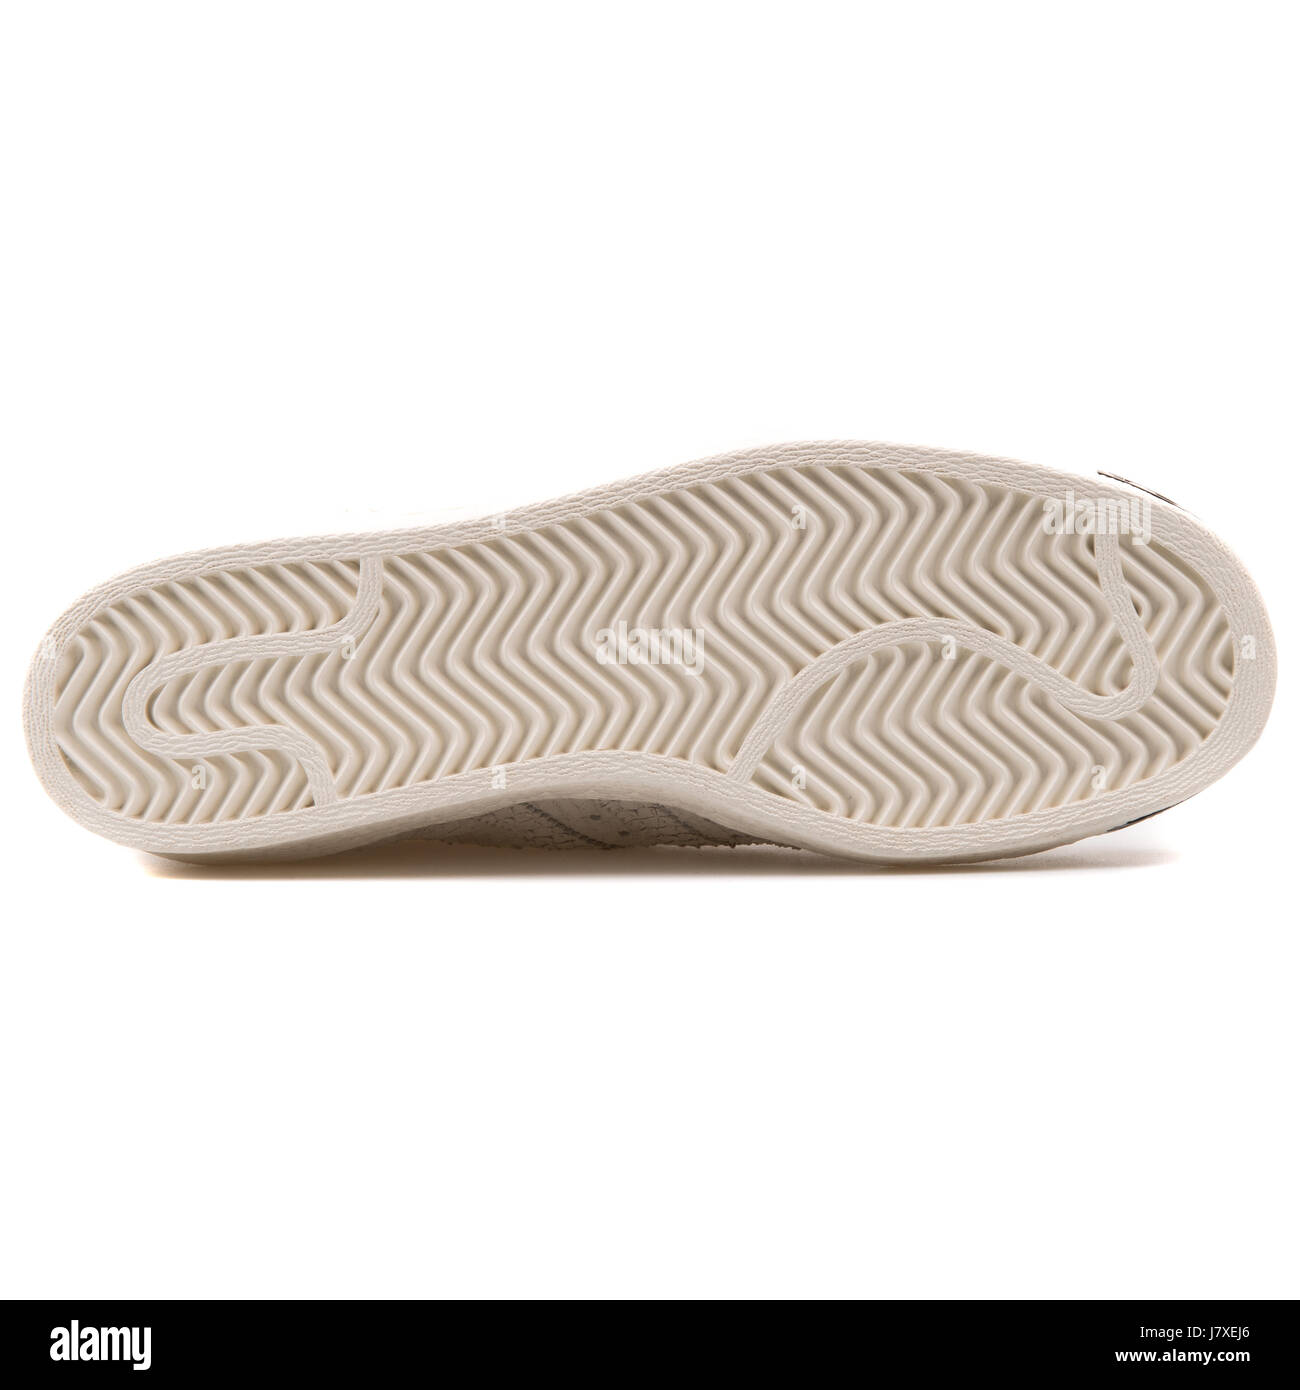 Adidas Superstar 80S puntera metálica W Mujer cuero blanco clásico con patrón de piel de zapatillas Fotografía de stock Alamy